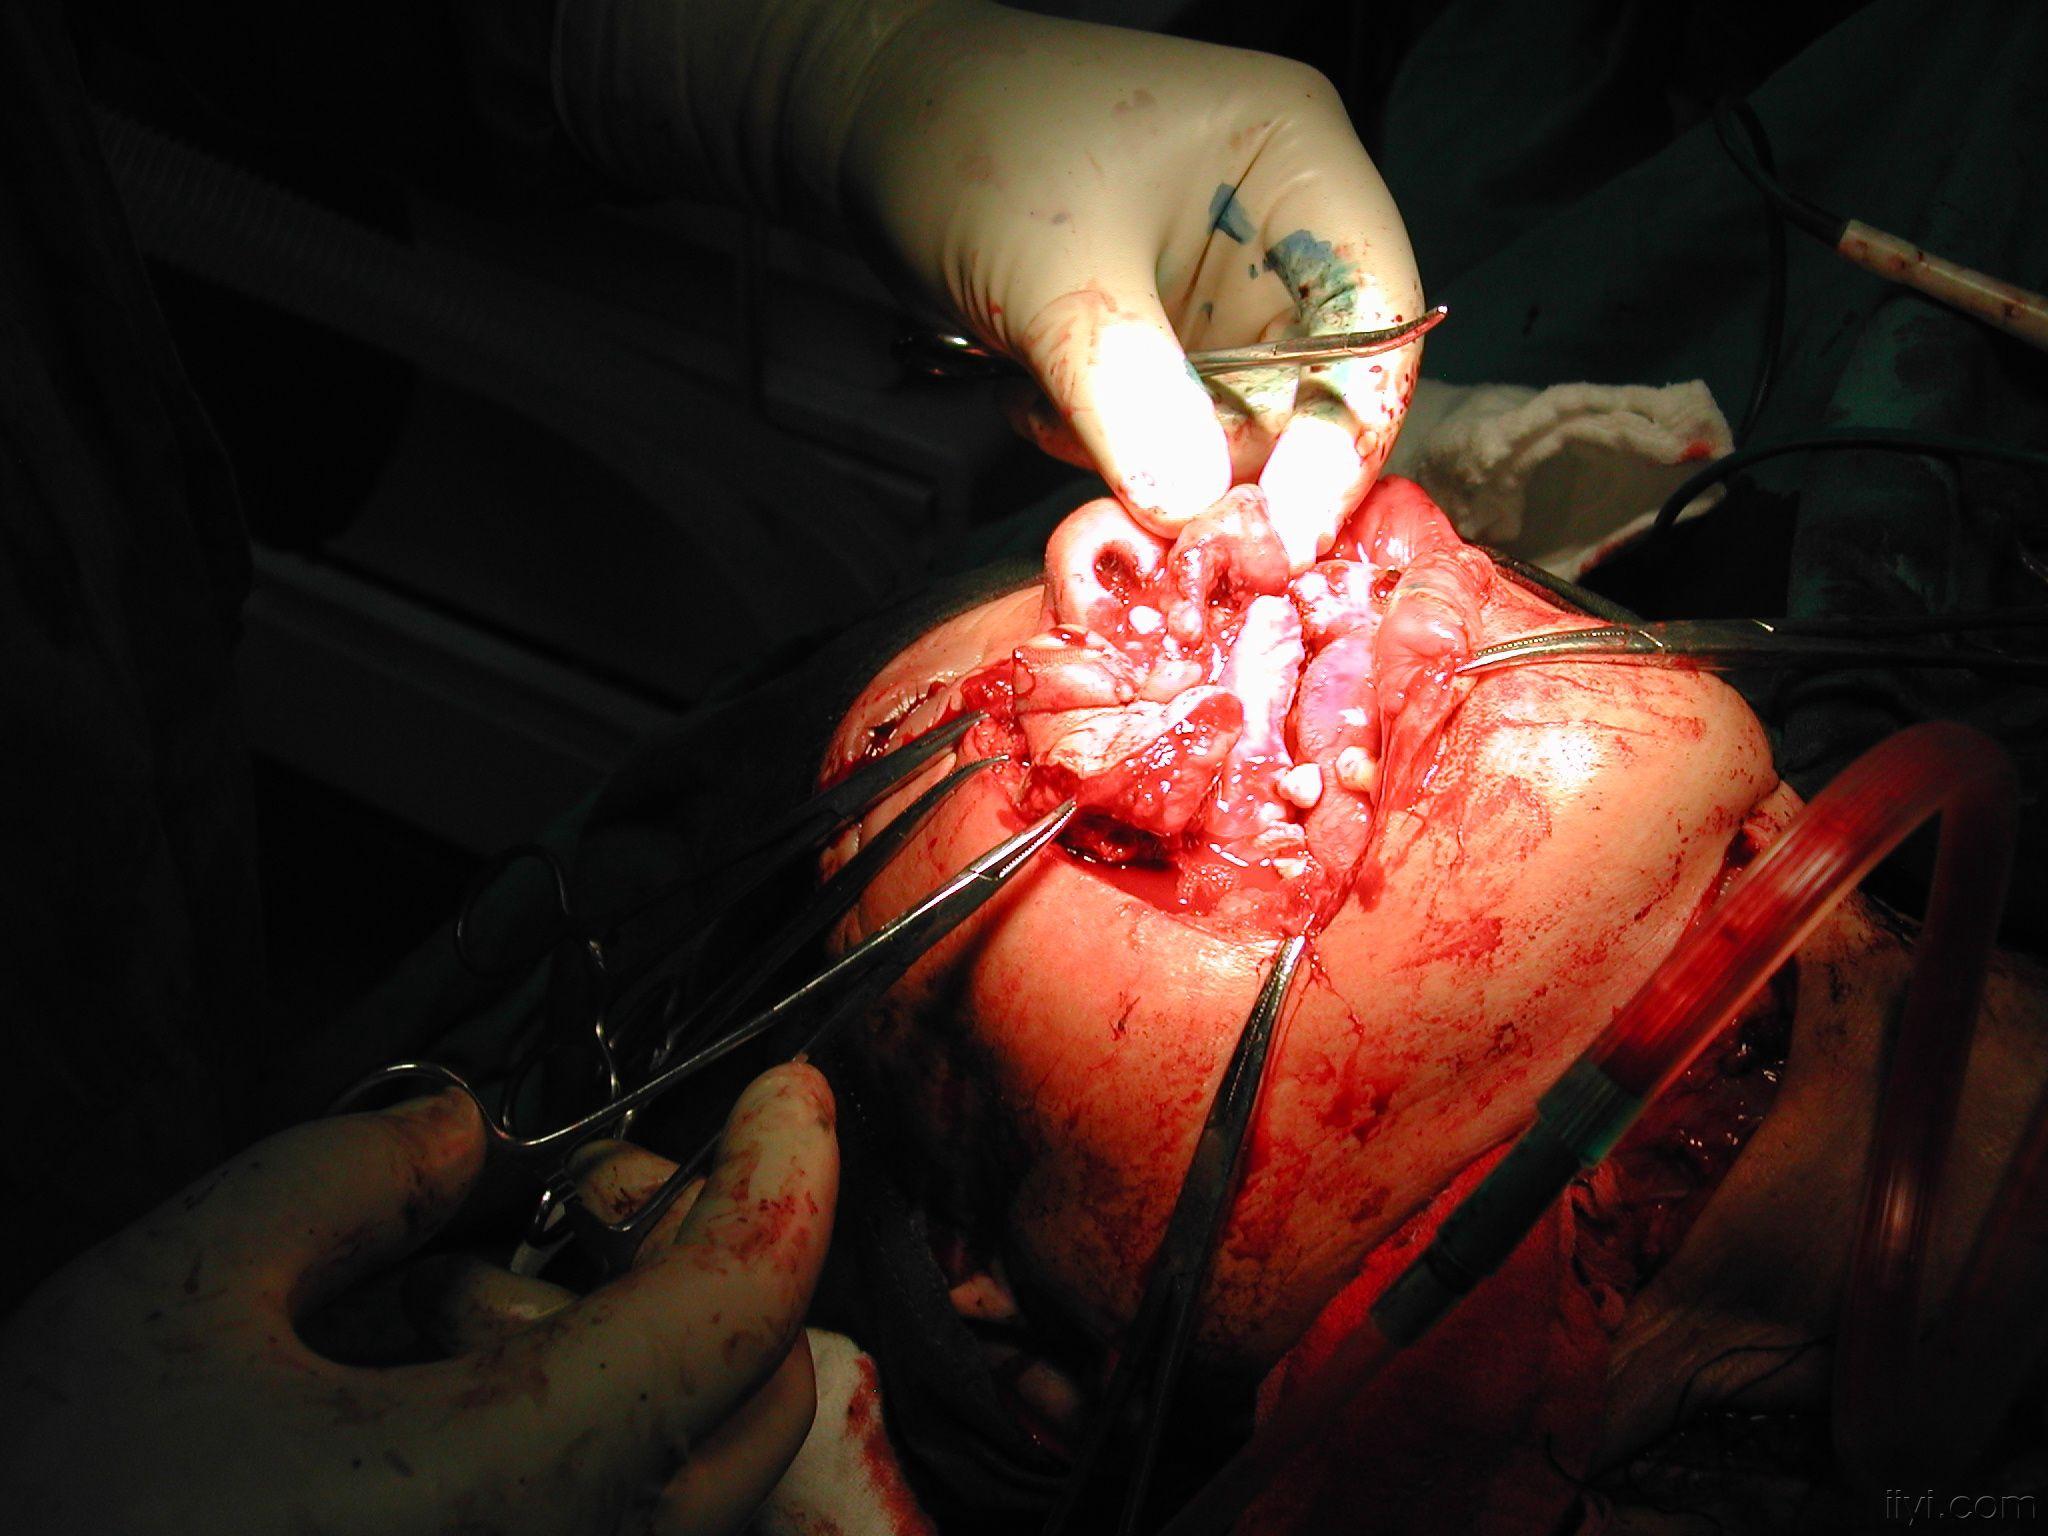 牙龈癌图片手术图片